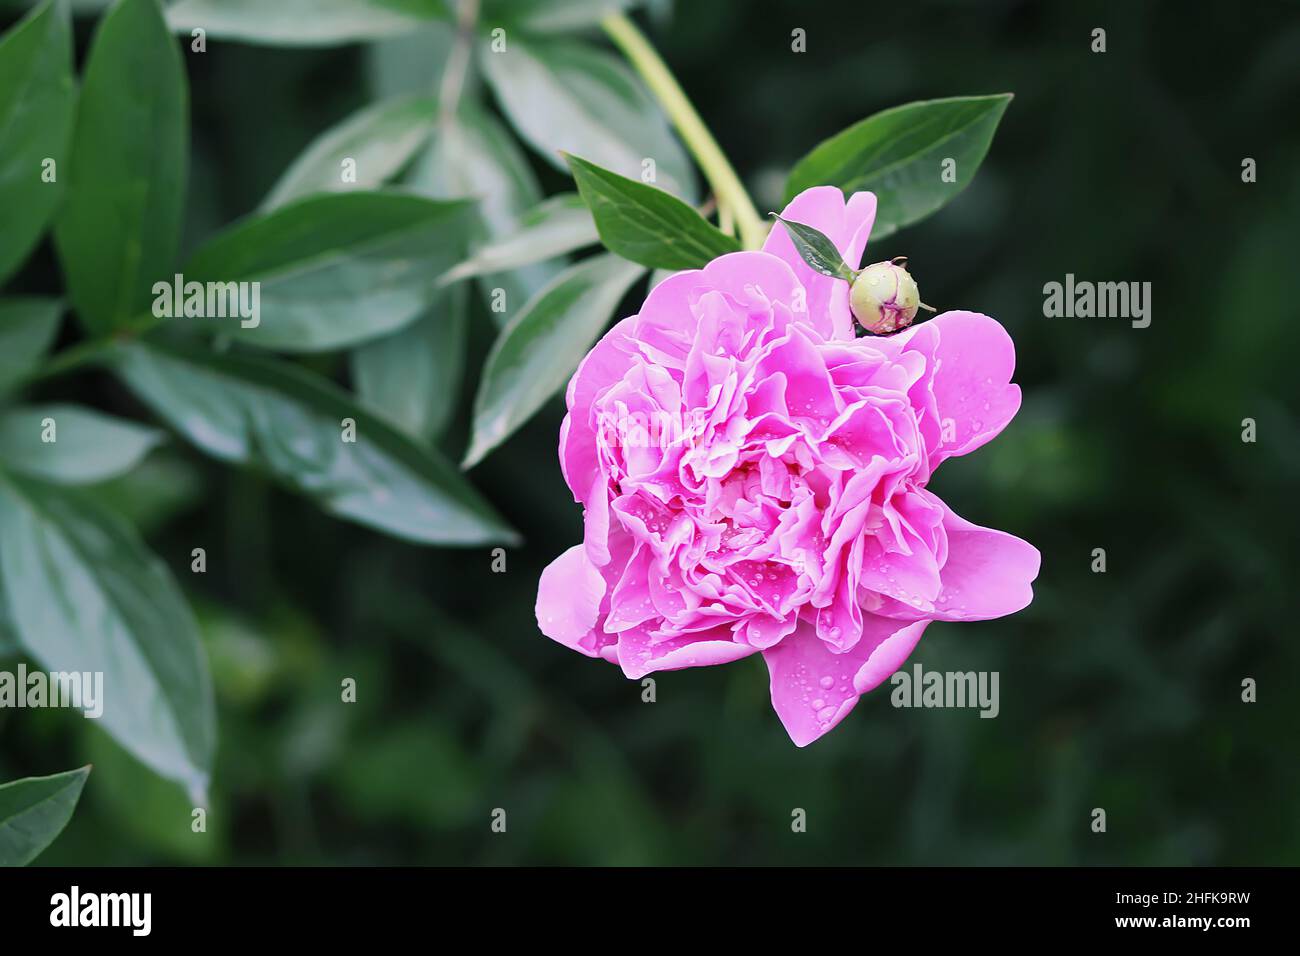 Rosa Pfingstrose duftende schöne Blumen blühen im Sommergarten. Paeonia krautige mehrjährige Zierpflanze. Stockfoto